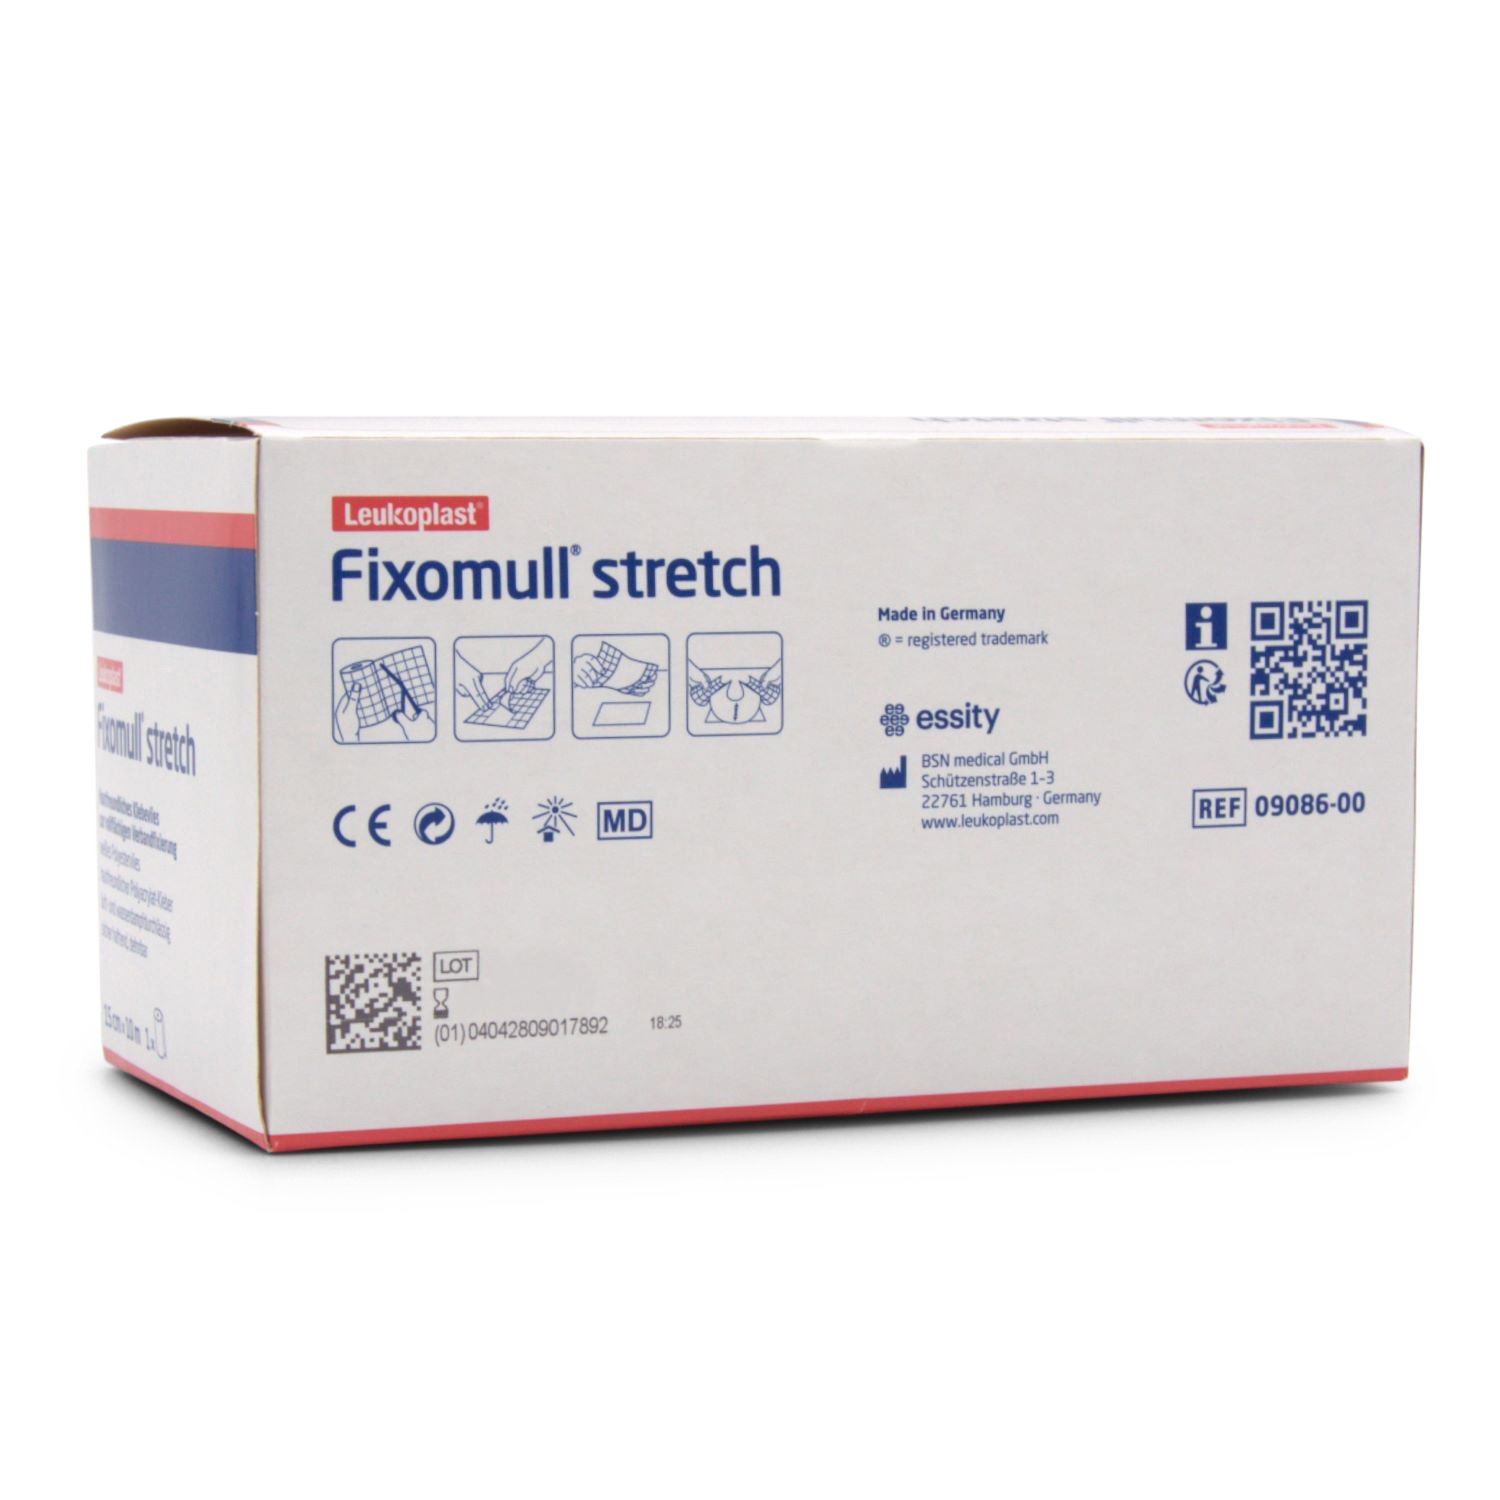 Fixomull® stretch Fixierpflaster (10 m x 15 cm, weiß, luftdurchlässiges Klebevlies)